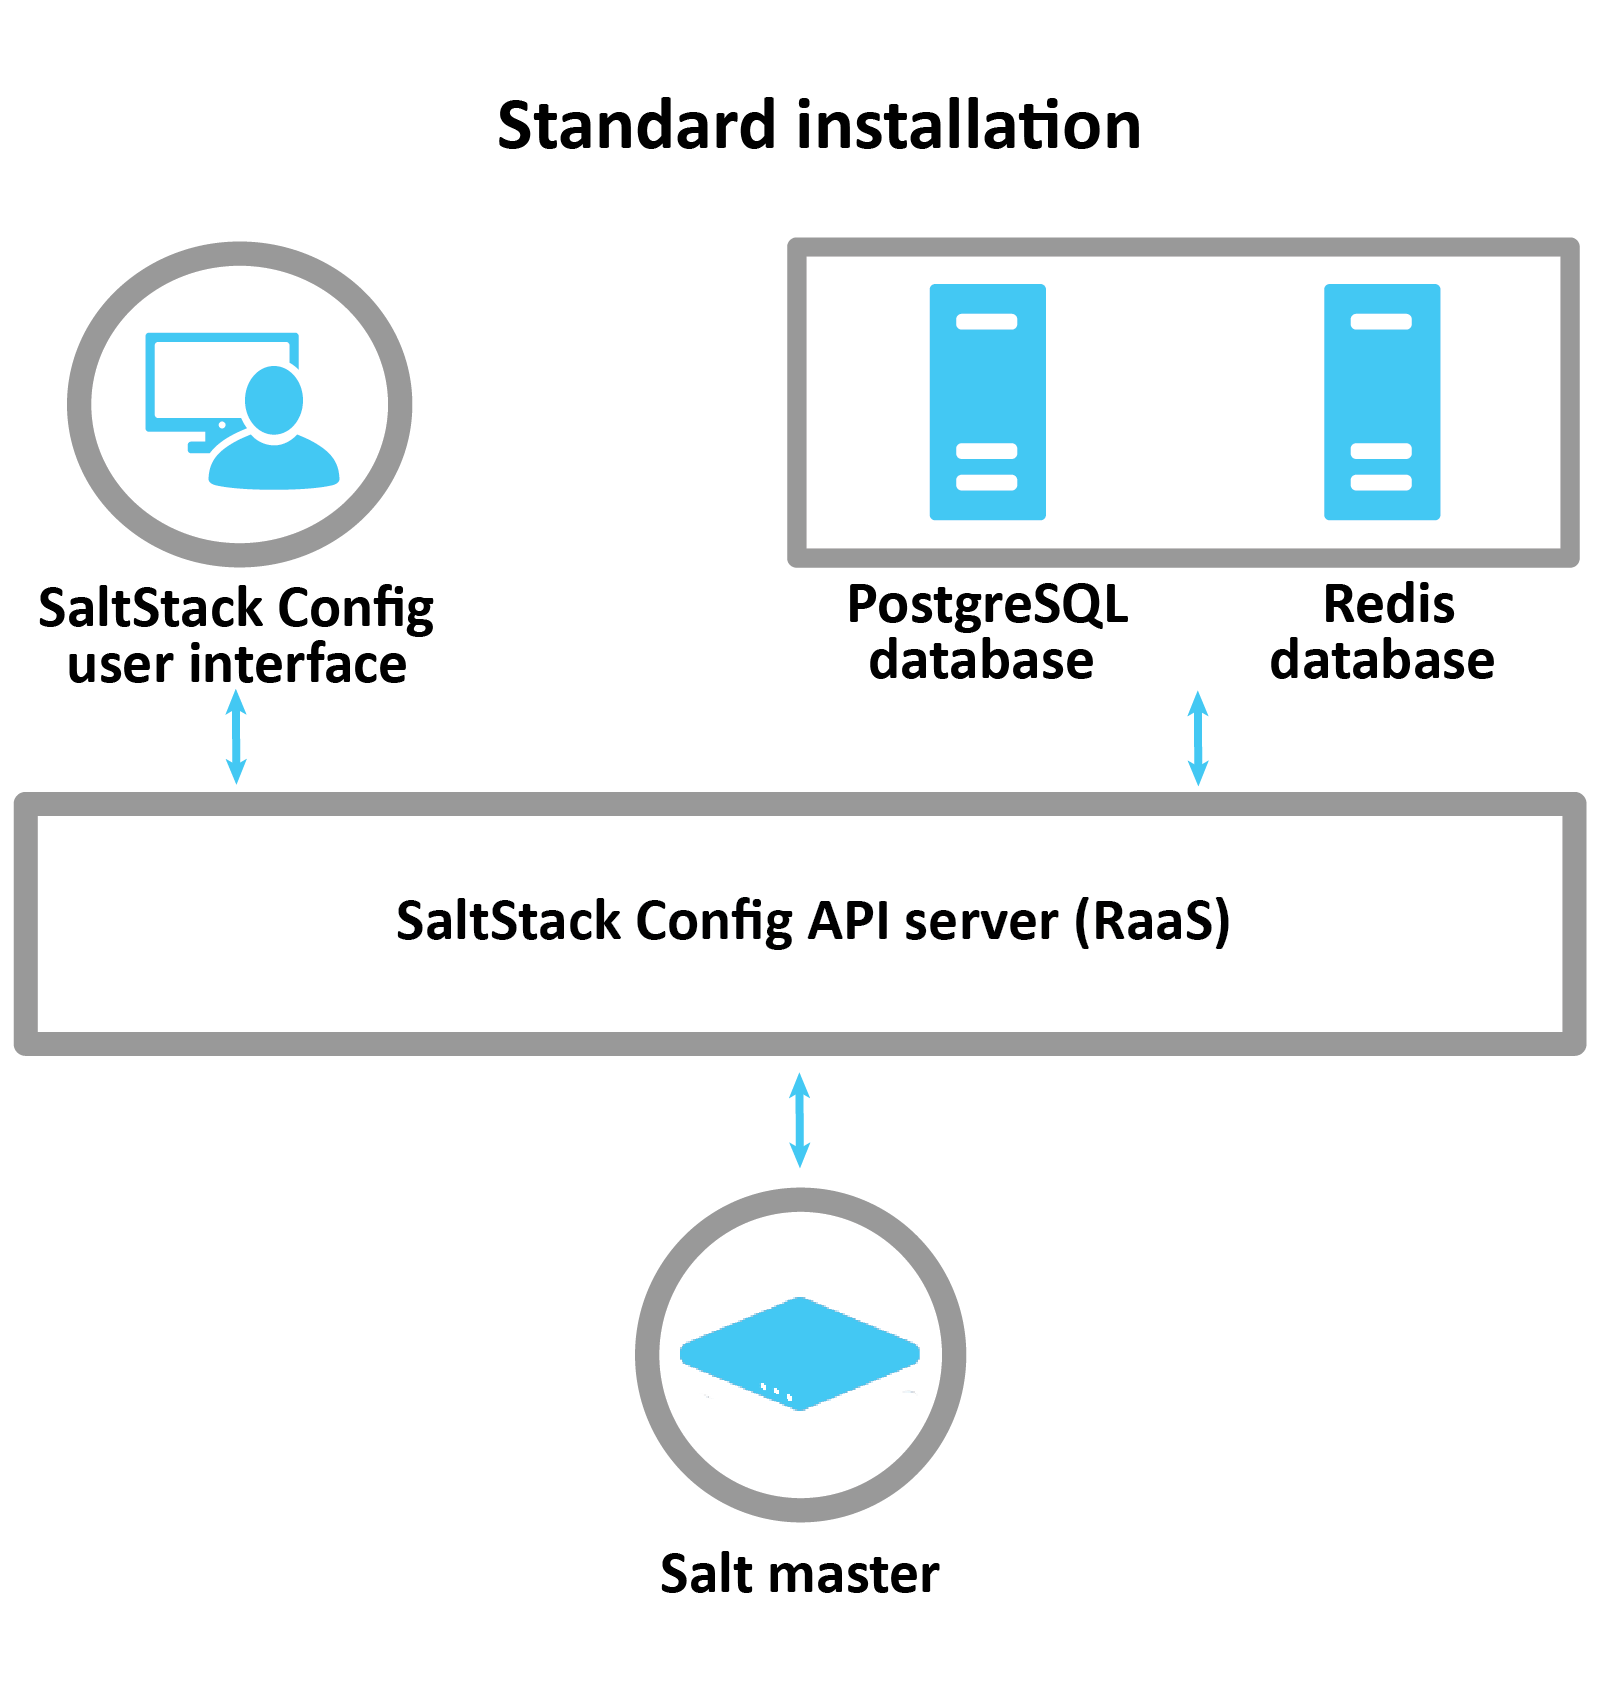 Diagramma che spiega come funziona un'installazione standard di SaltStack: vRA, Postgress e Redis si connettono al server RaaS che controlla Salt Master.